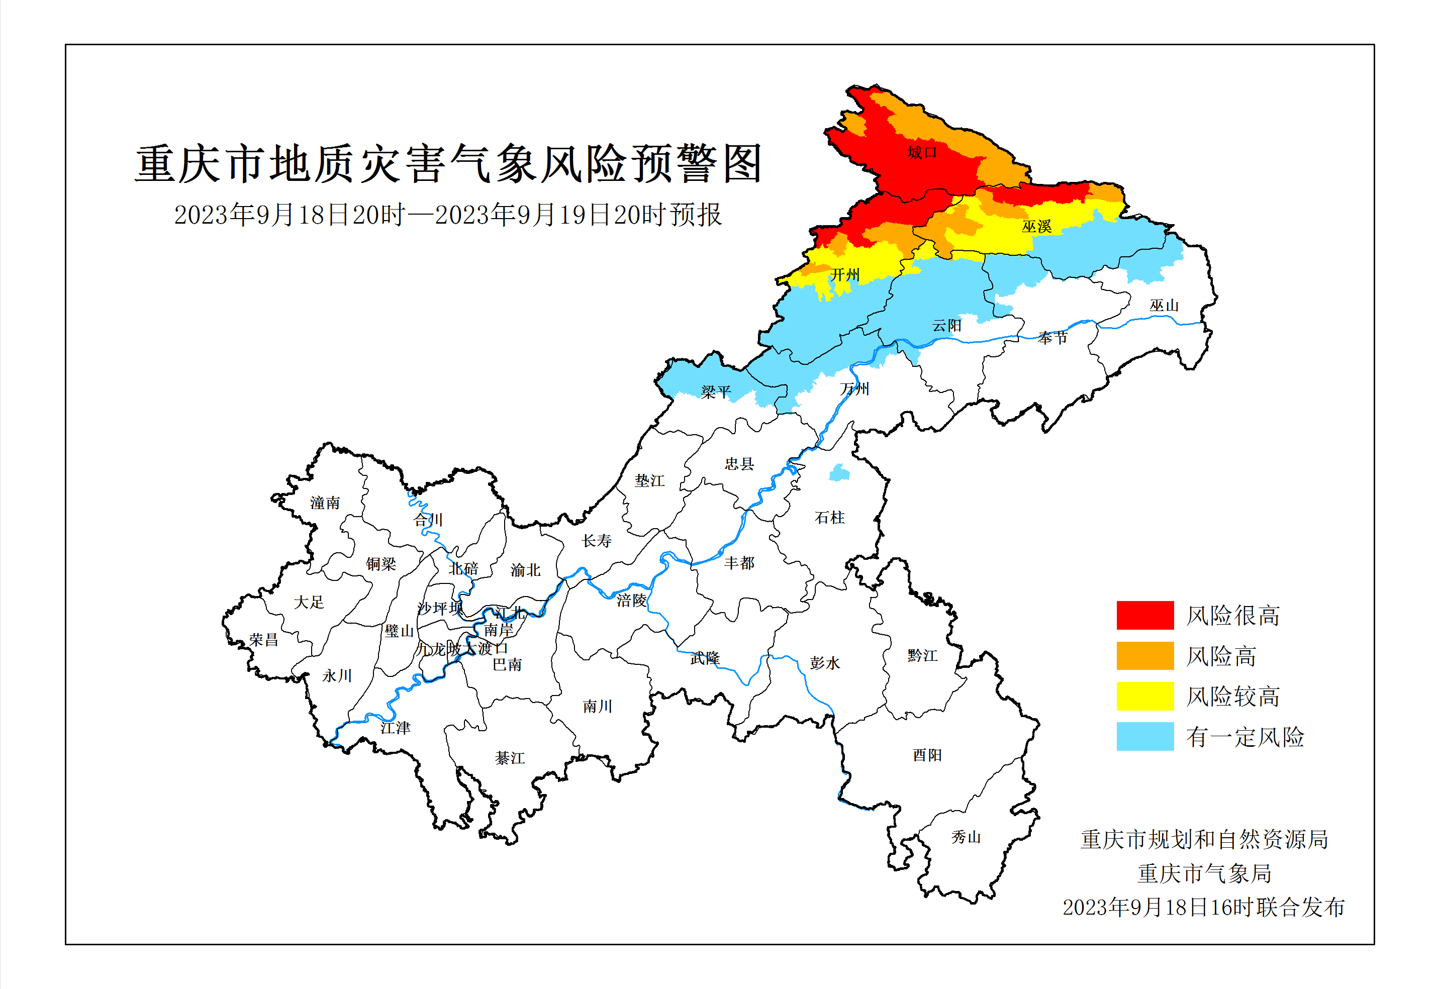 重庆迎新一轮强降雨 局地地质灾害风险达红色预警